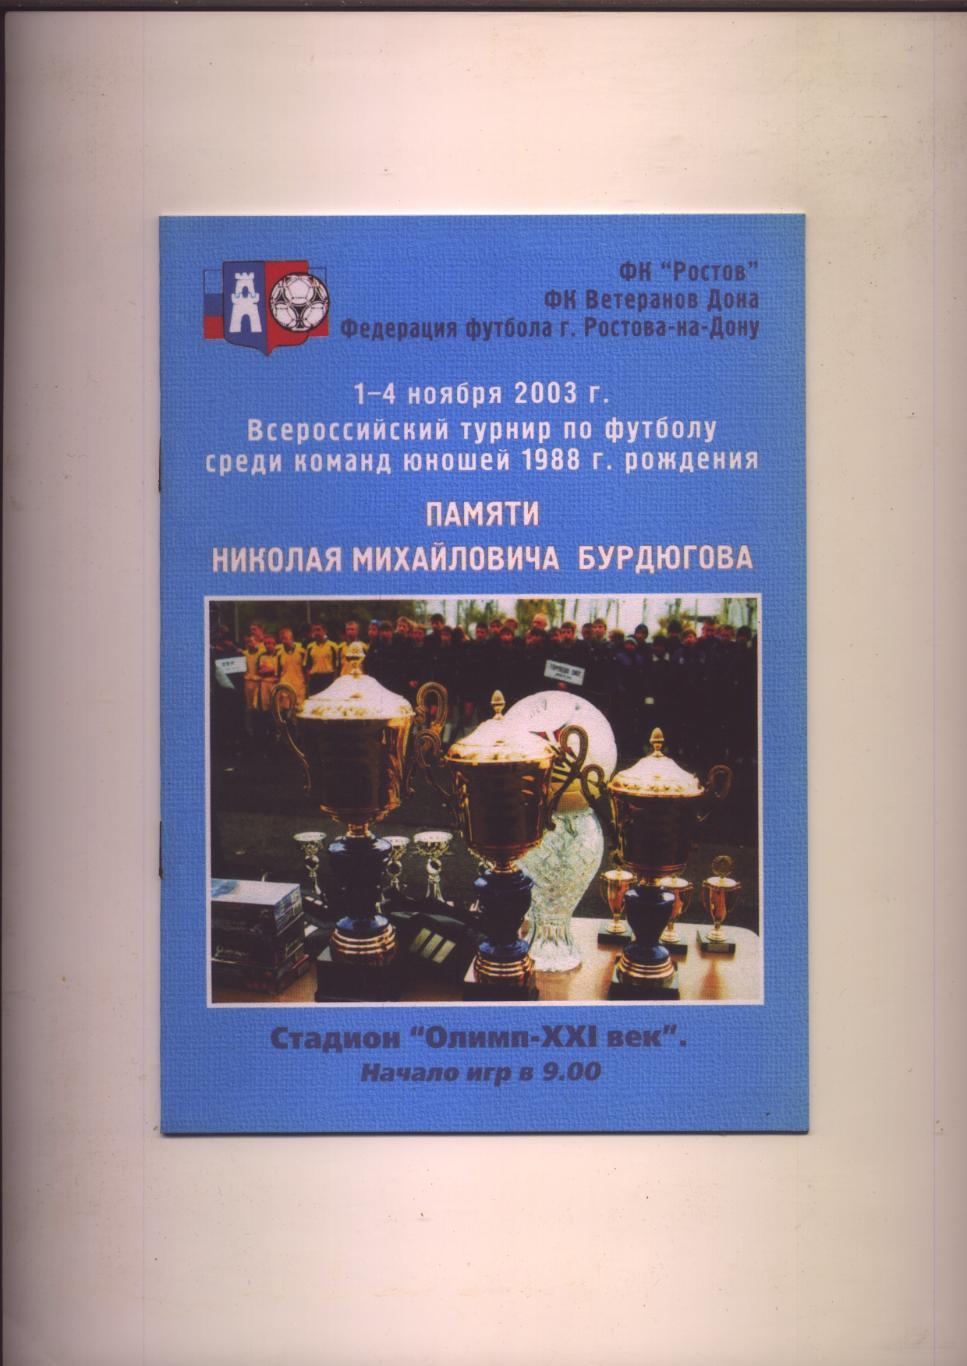 Всероссийский турнир по футболу памяти Бурдюгова 2003 Участников см на програме